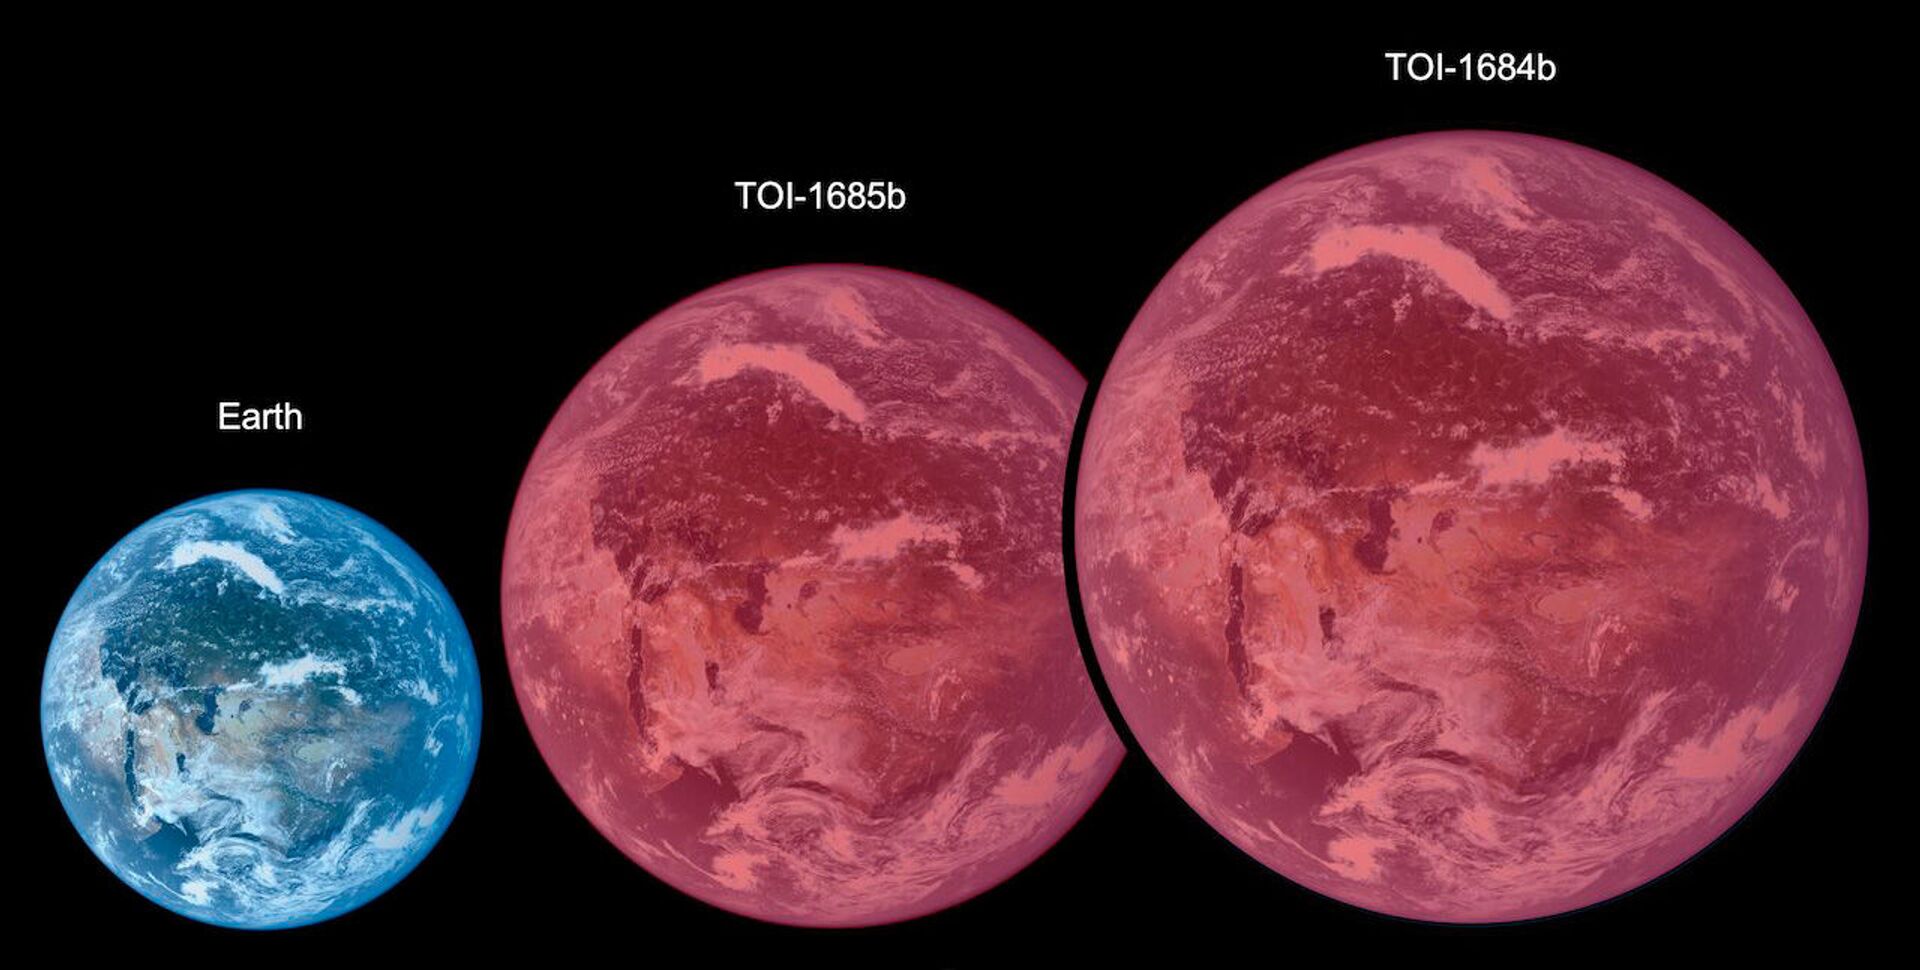 Dimensões dos planetas TOI-1634 e TOI-1685 em comparação com a Terra - Sputnik Brasil, 1920, 09.11.2021